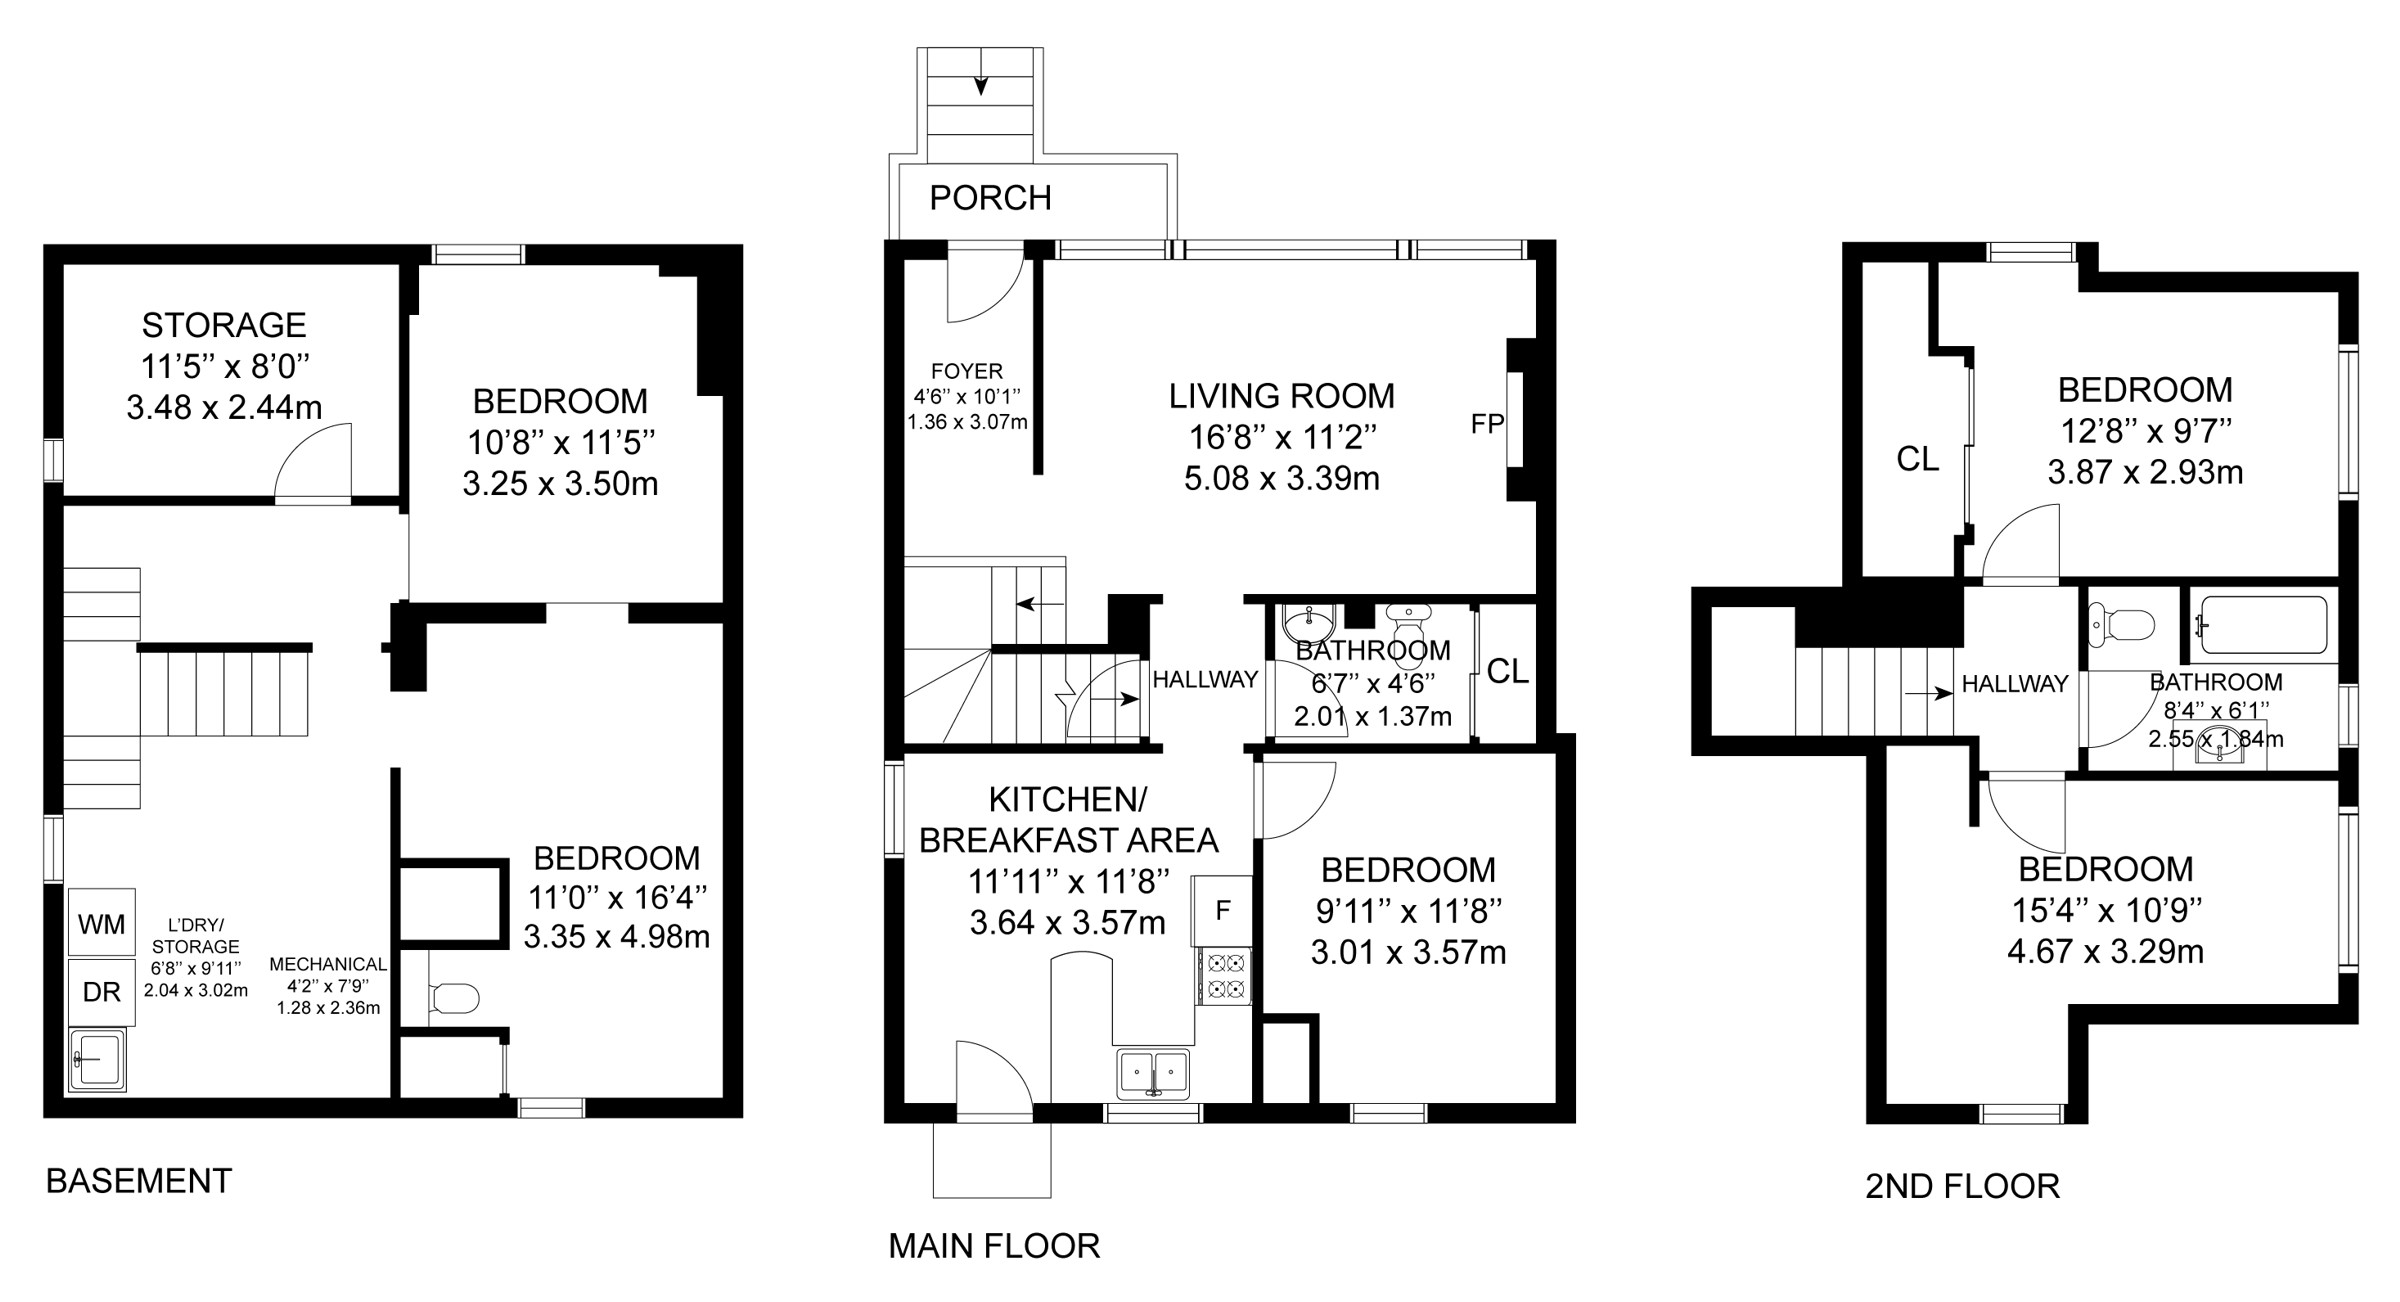 48 Frances Avenue - Floor Plans